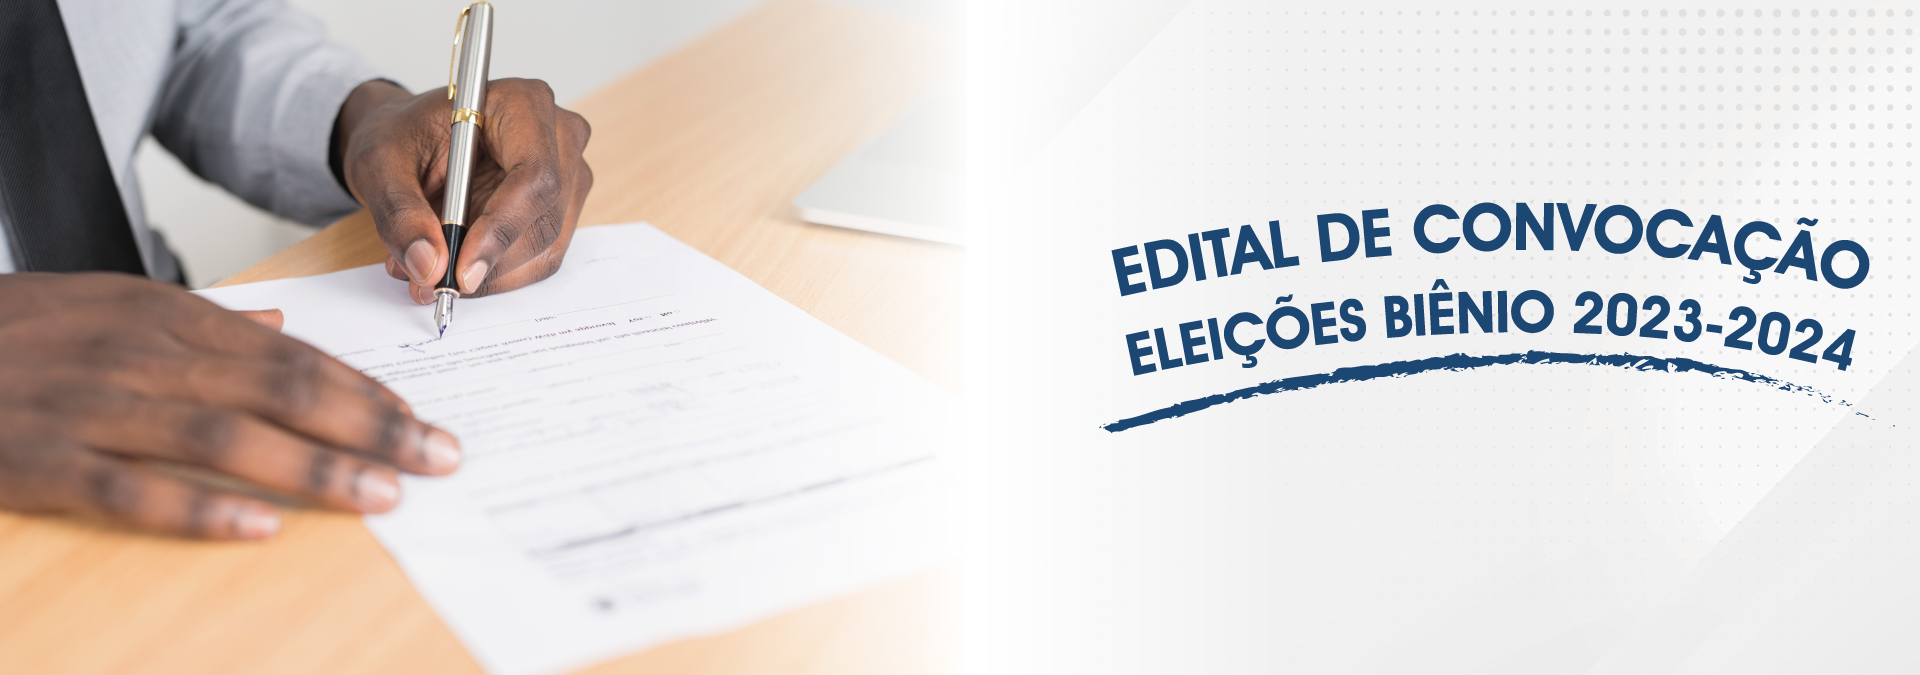 EDITAL DE CONVOCAÇÃO - Eleições Biênio 2023-2024